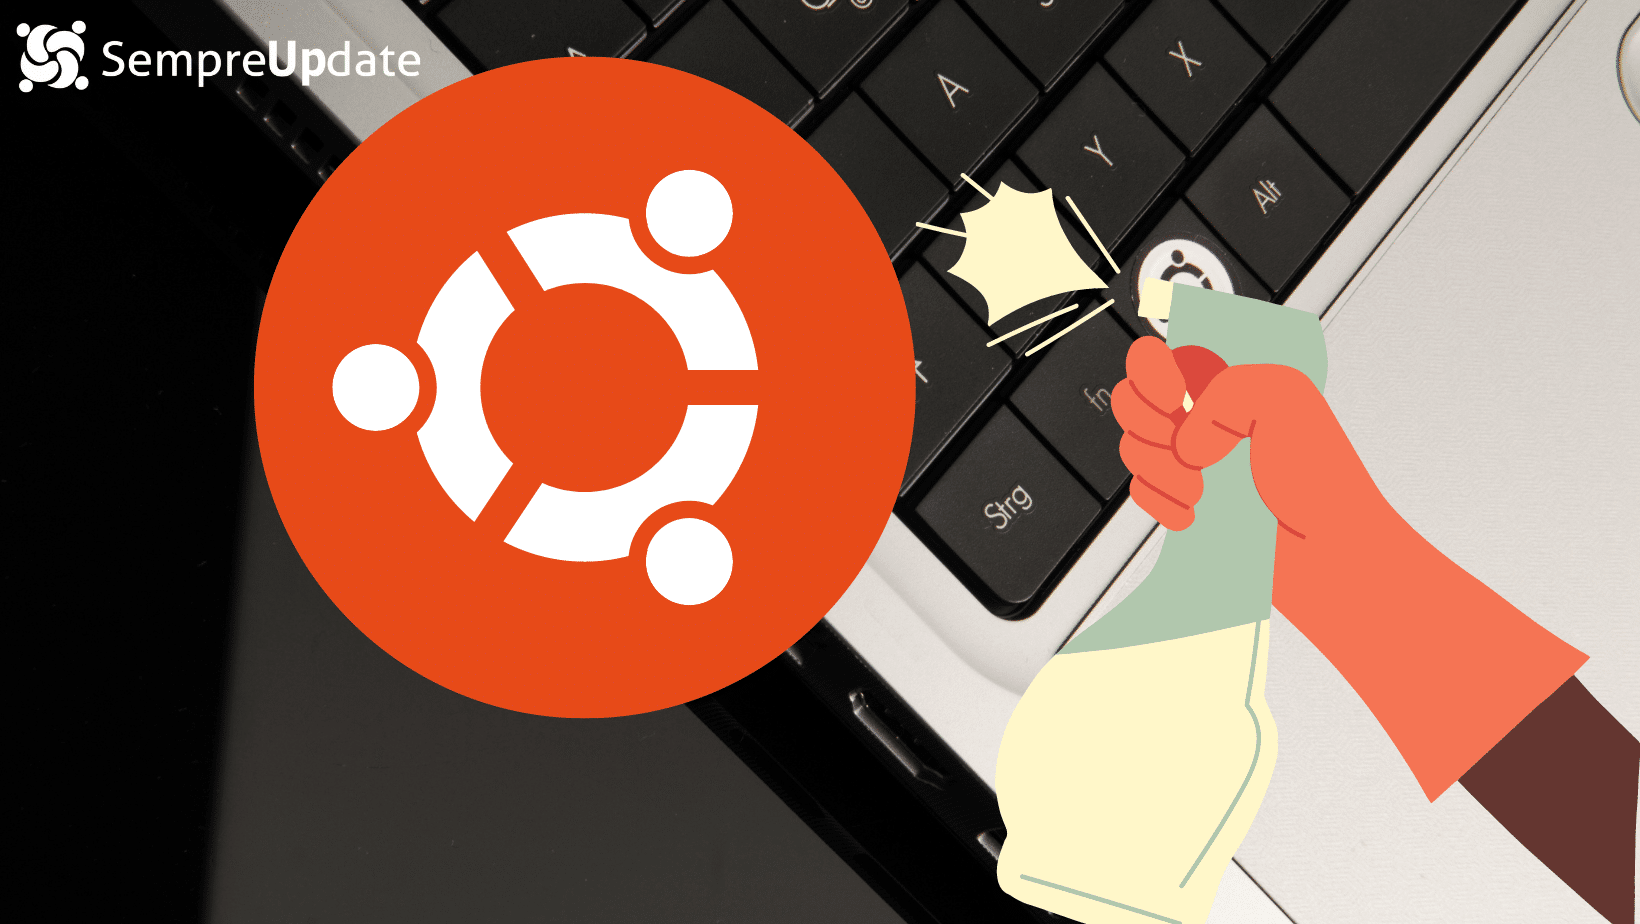 Desenvolvimento do Ubuntu Core Desktop está atrasado e não será lançado em abril